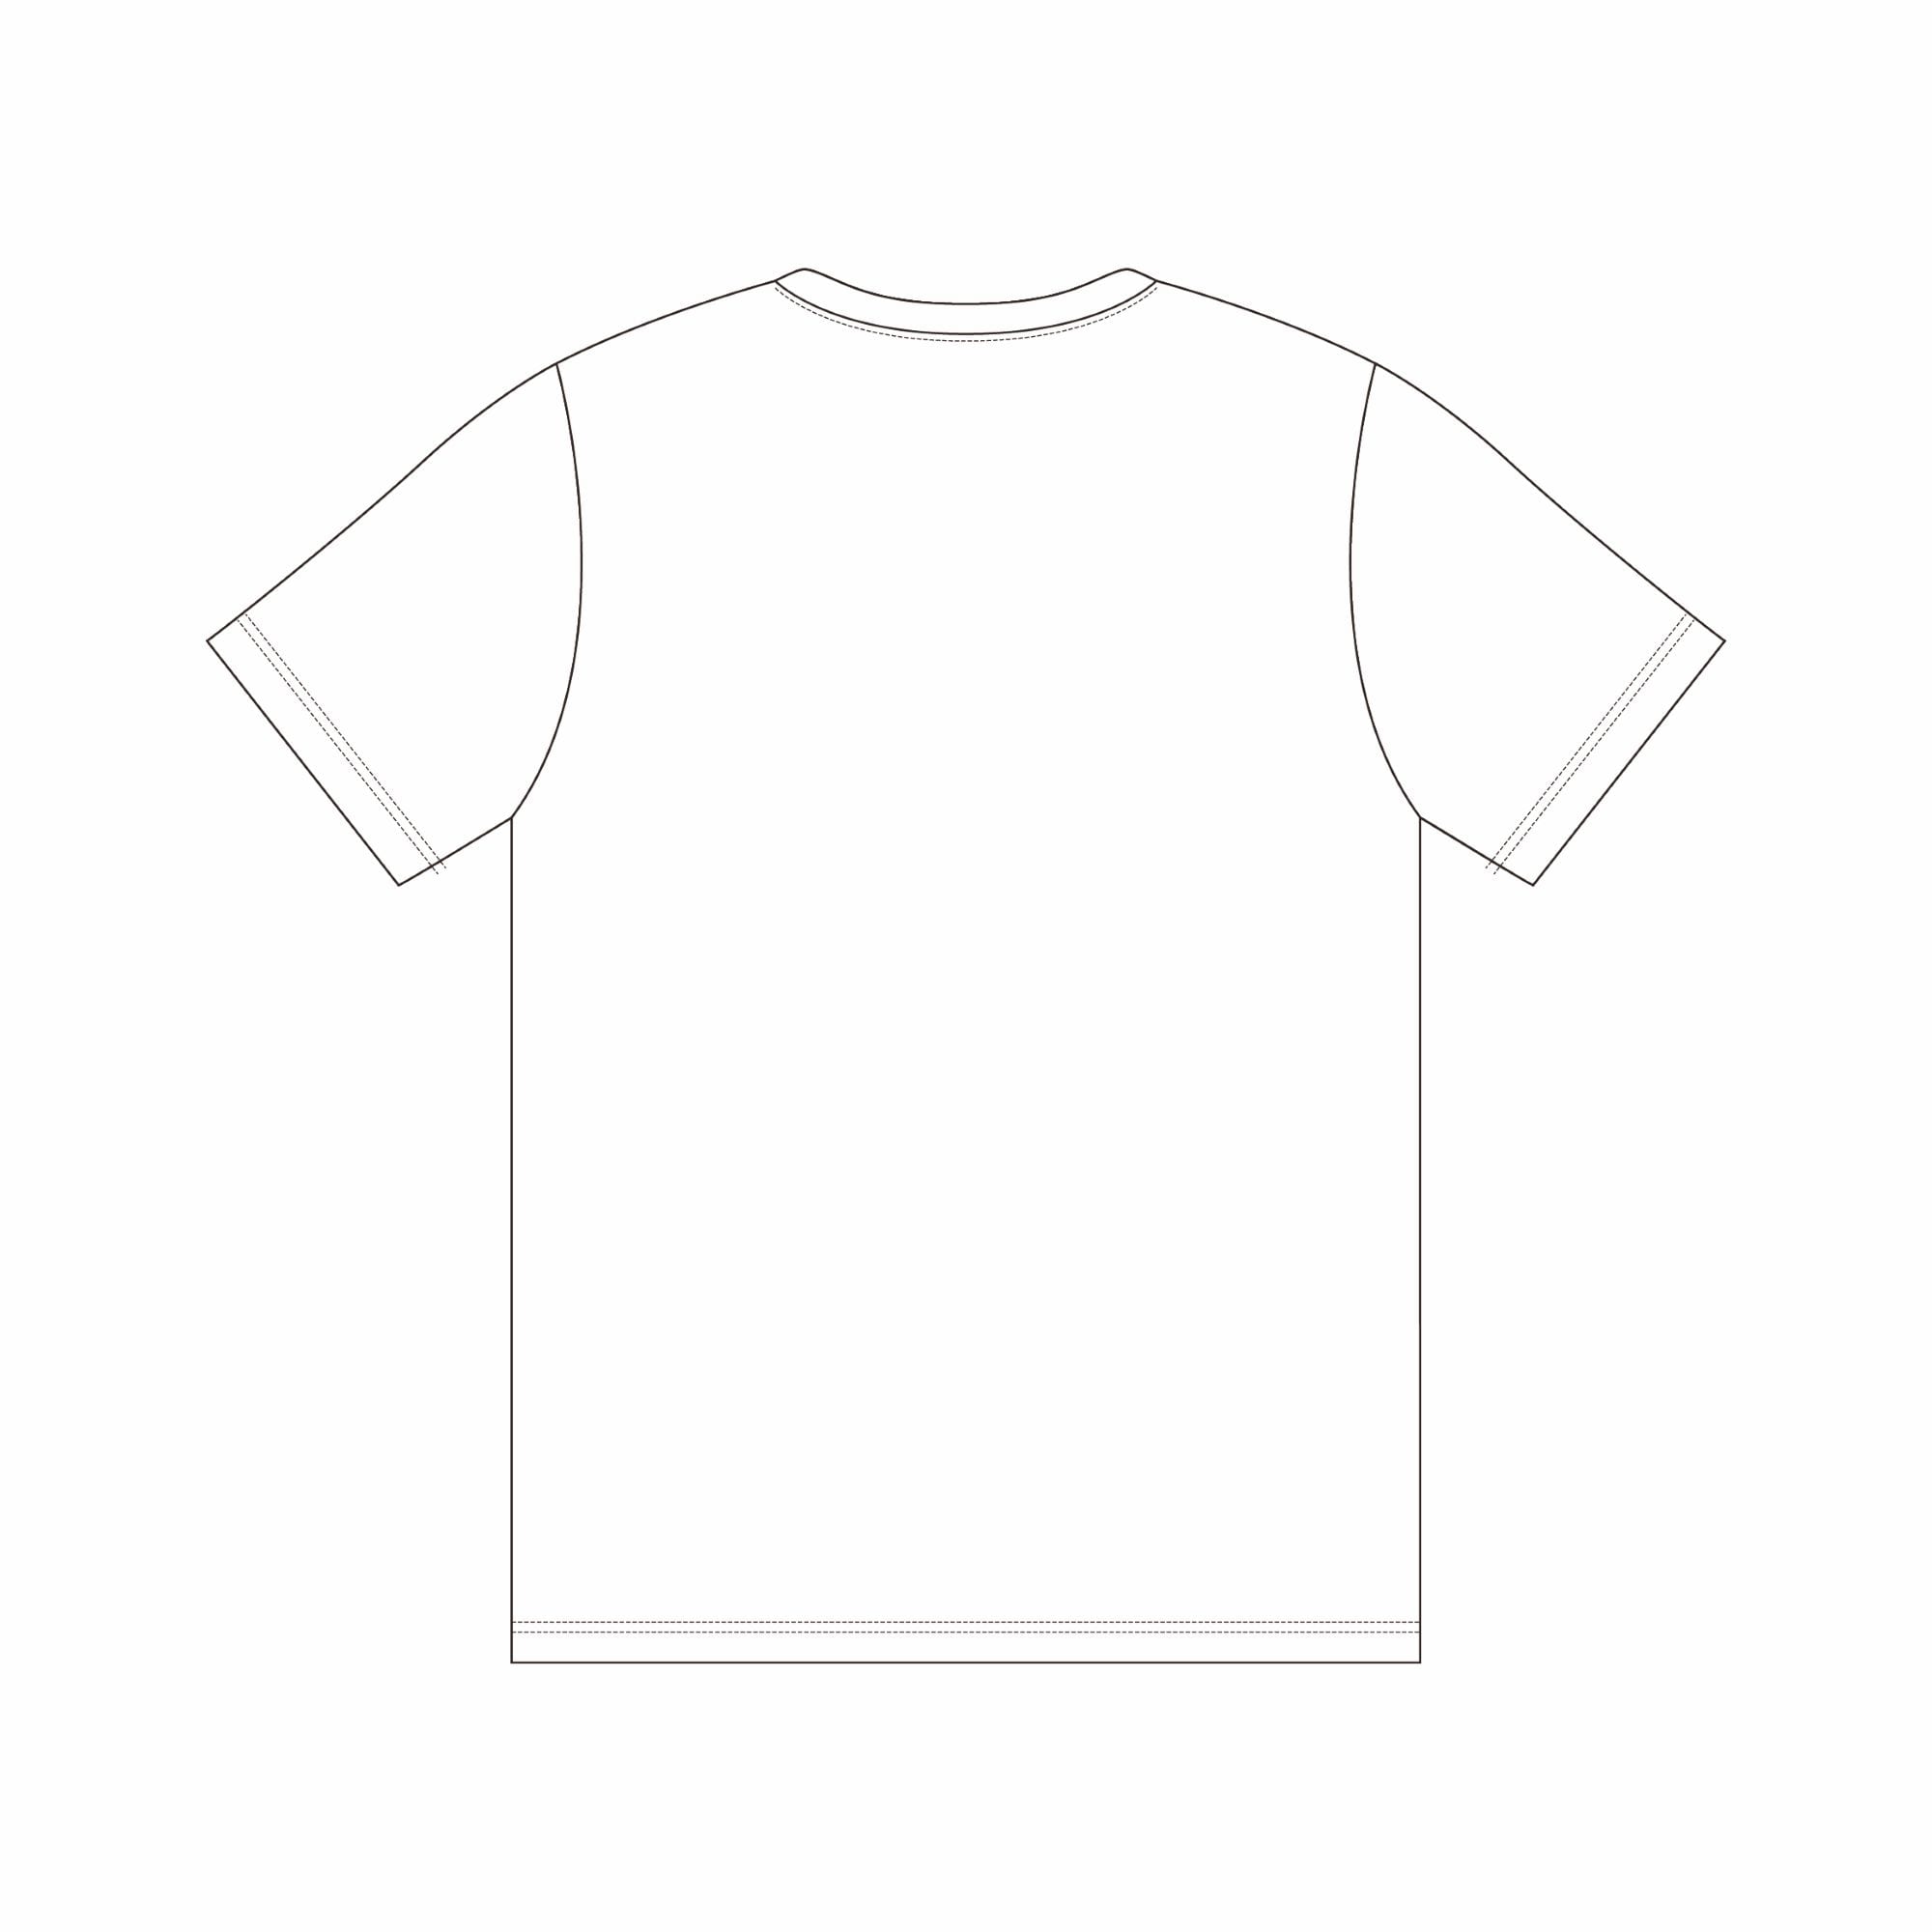 【受注生産】6.7 井上尚弥限定WINNER Tシャツ[ユニセックス]XLサイズ